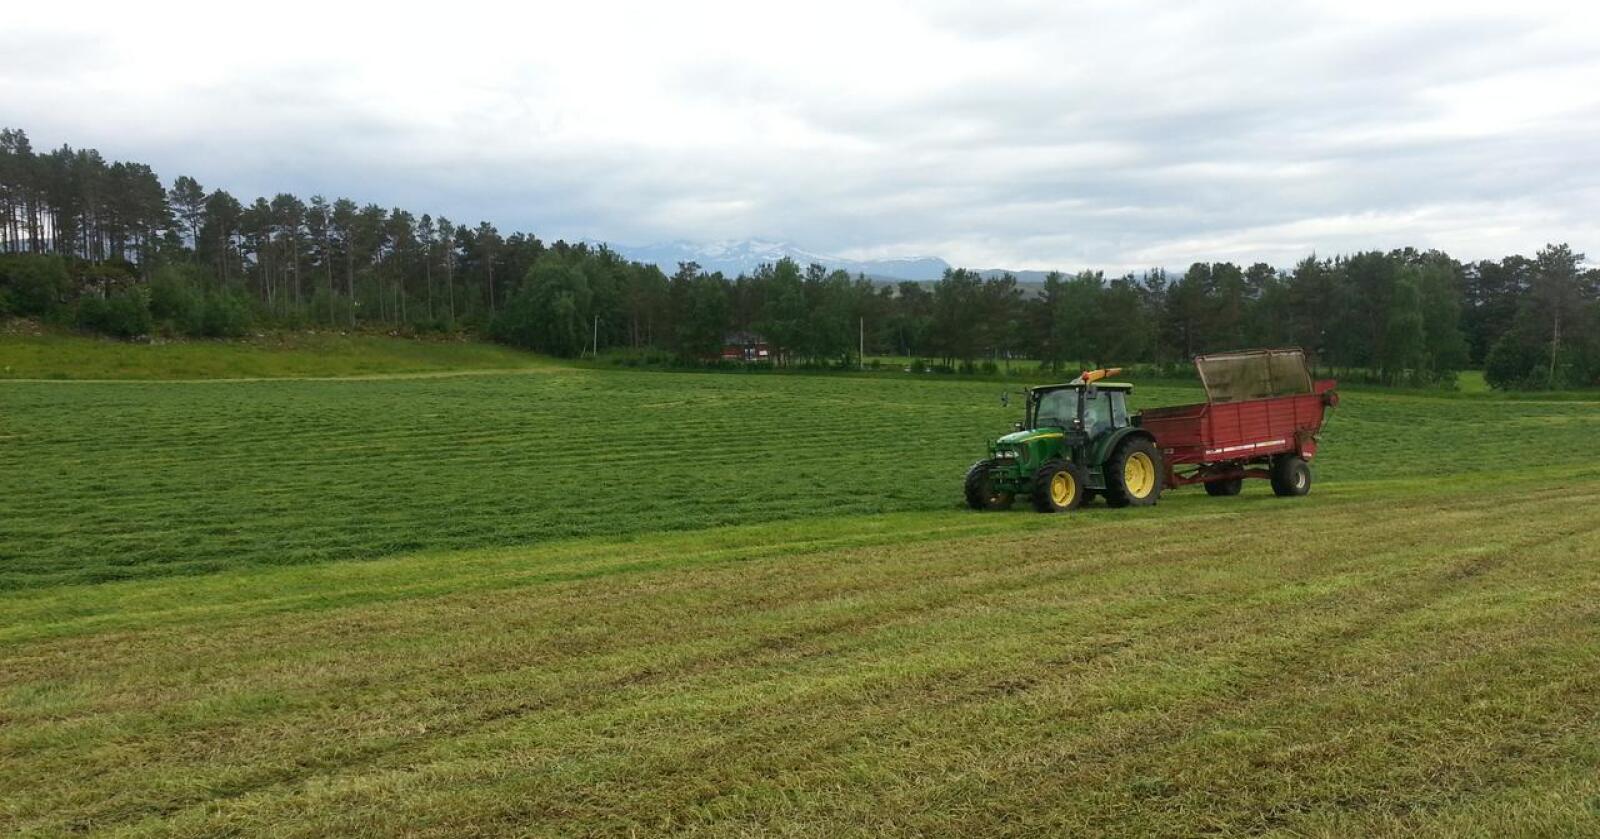 Lite korn: Norsk landbruk er først og fremst bygd på grasproduksjon. Foto: Privat